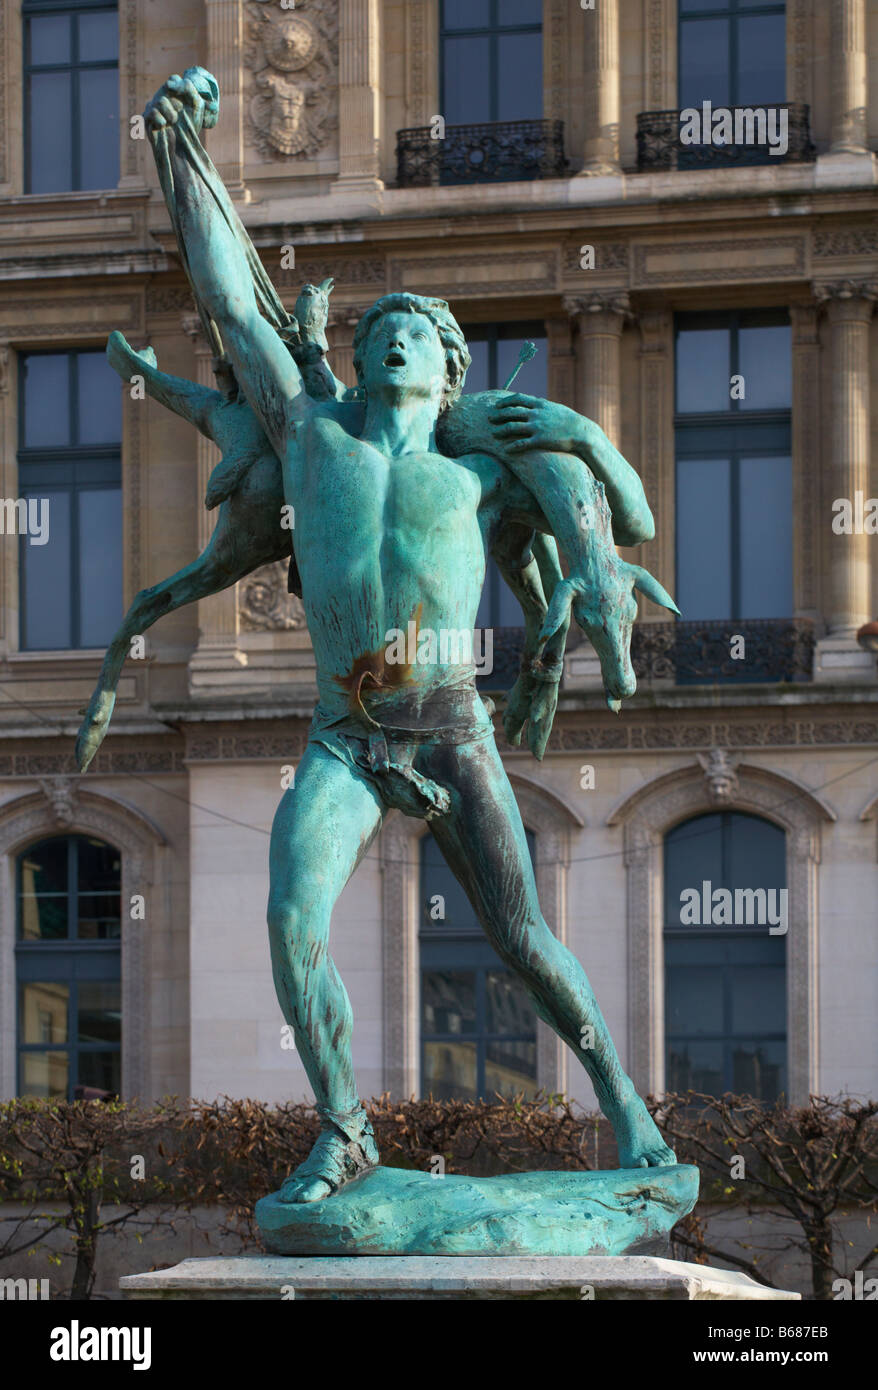 Retour de chasse statue by Antonin Carlès at the Jardin des Tuileries Paris  France Stock Photo - Alamy